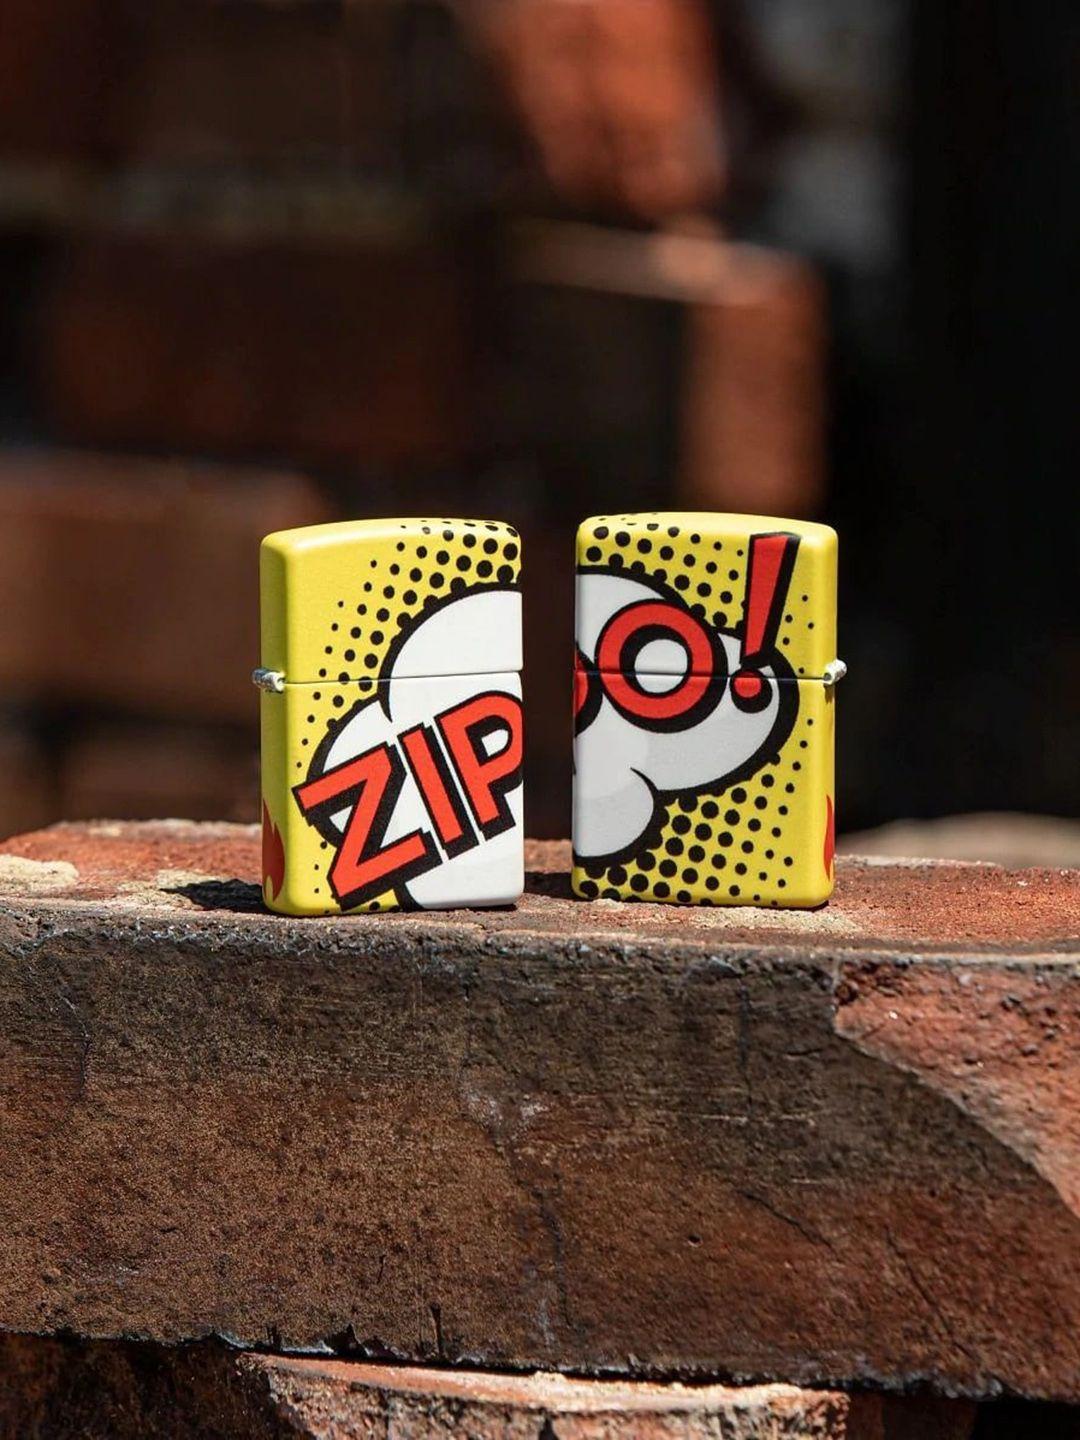 zippo yellow & red pop art design brass pocket lighter